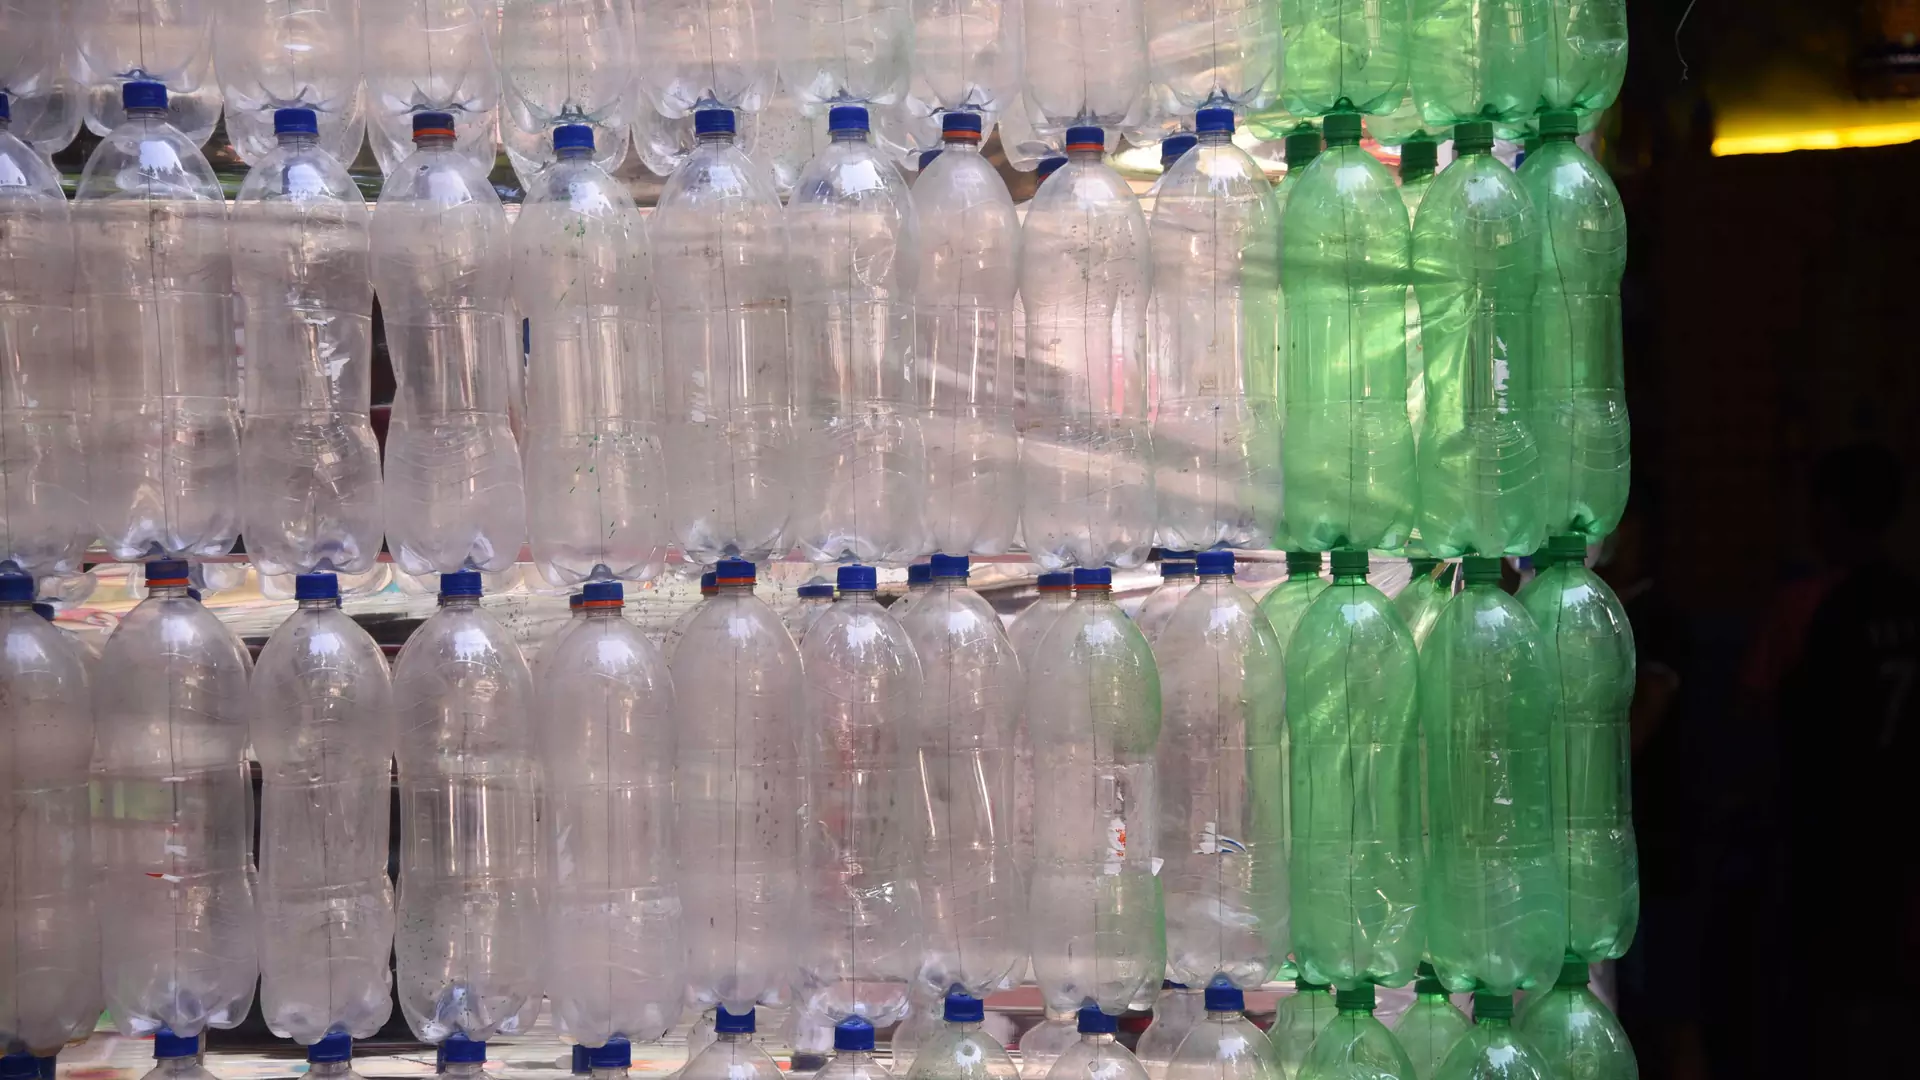 "Plastik nigdy nie powinien trafiać do środowiska". W 2020 r. tyle samo butelek, ile sprzeda Żywiec Zdrój, zostanie poddana recyklingowi